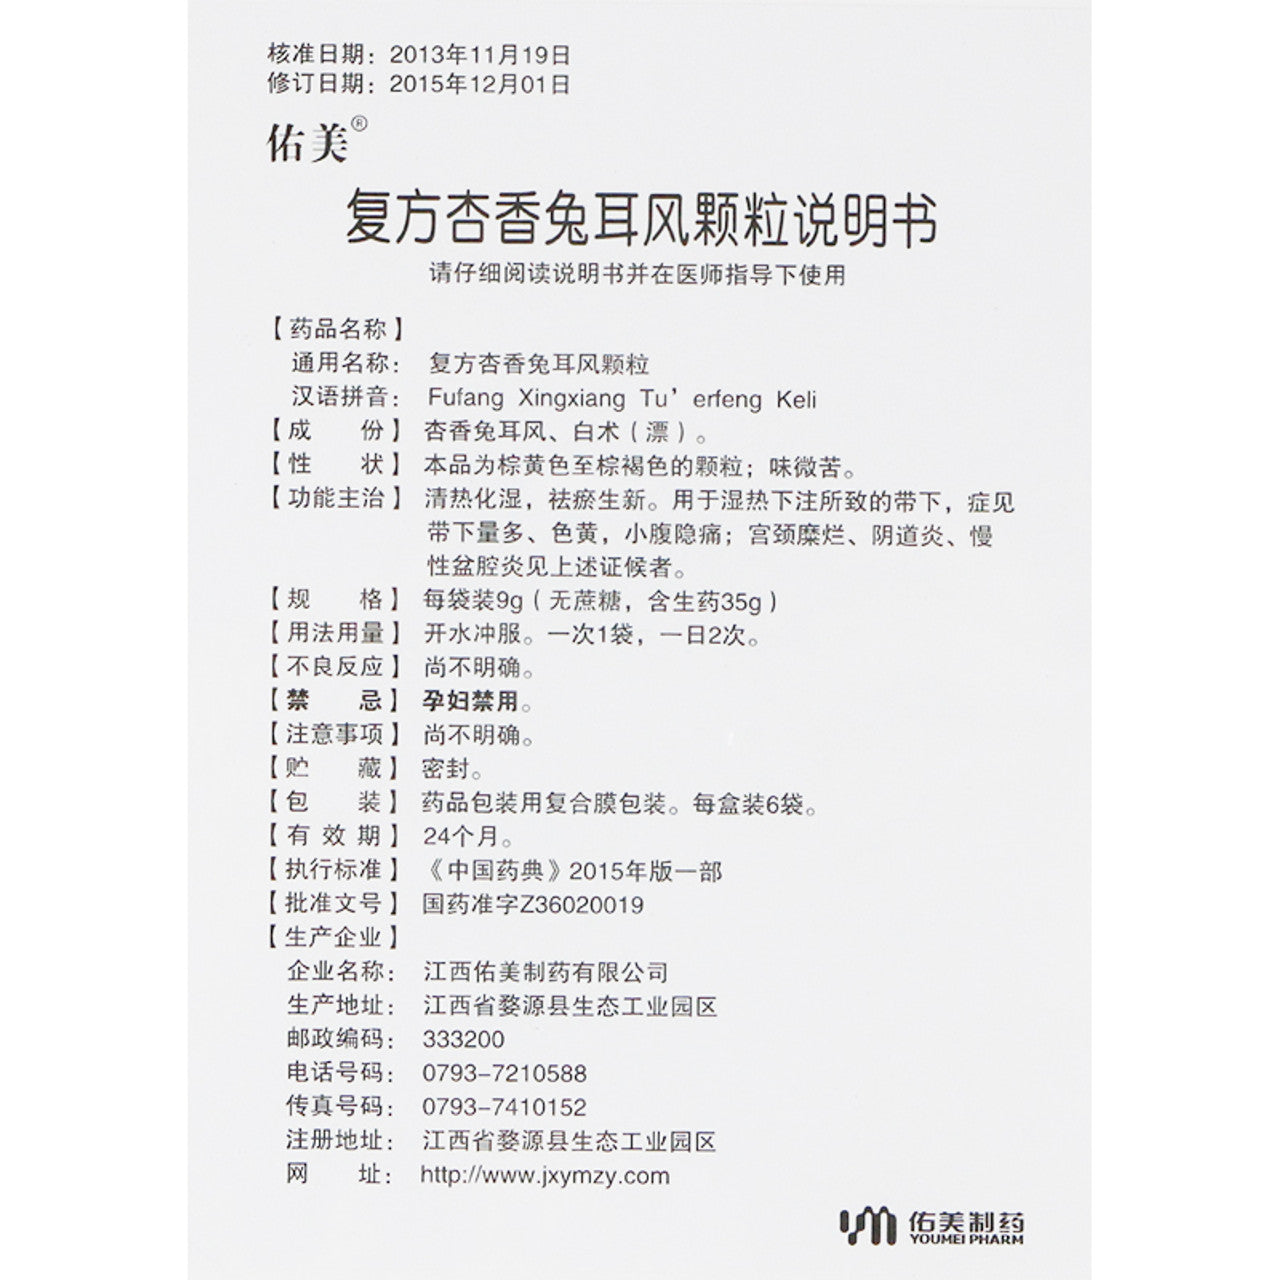 China Herb. Brand Youmei. Fufang Xingxiang Tu'erfeng Keli or Fu Fang Xing Xiang Tu Er Feng Ke Li or Compound Xingxiang Rabbit Ear Wind Granules for cervical erosion, vaginitis, chronic pelvic inflammation